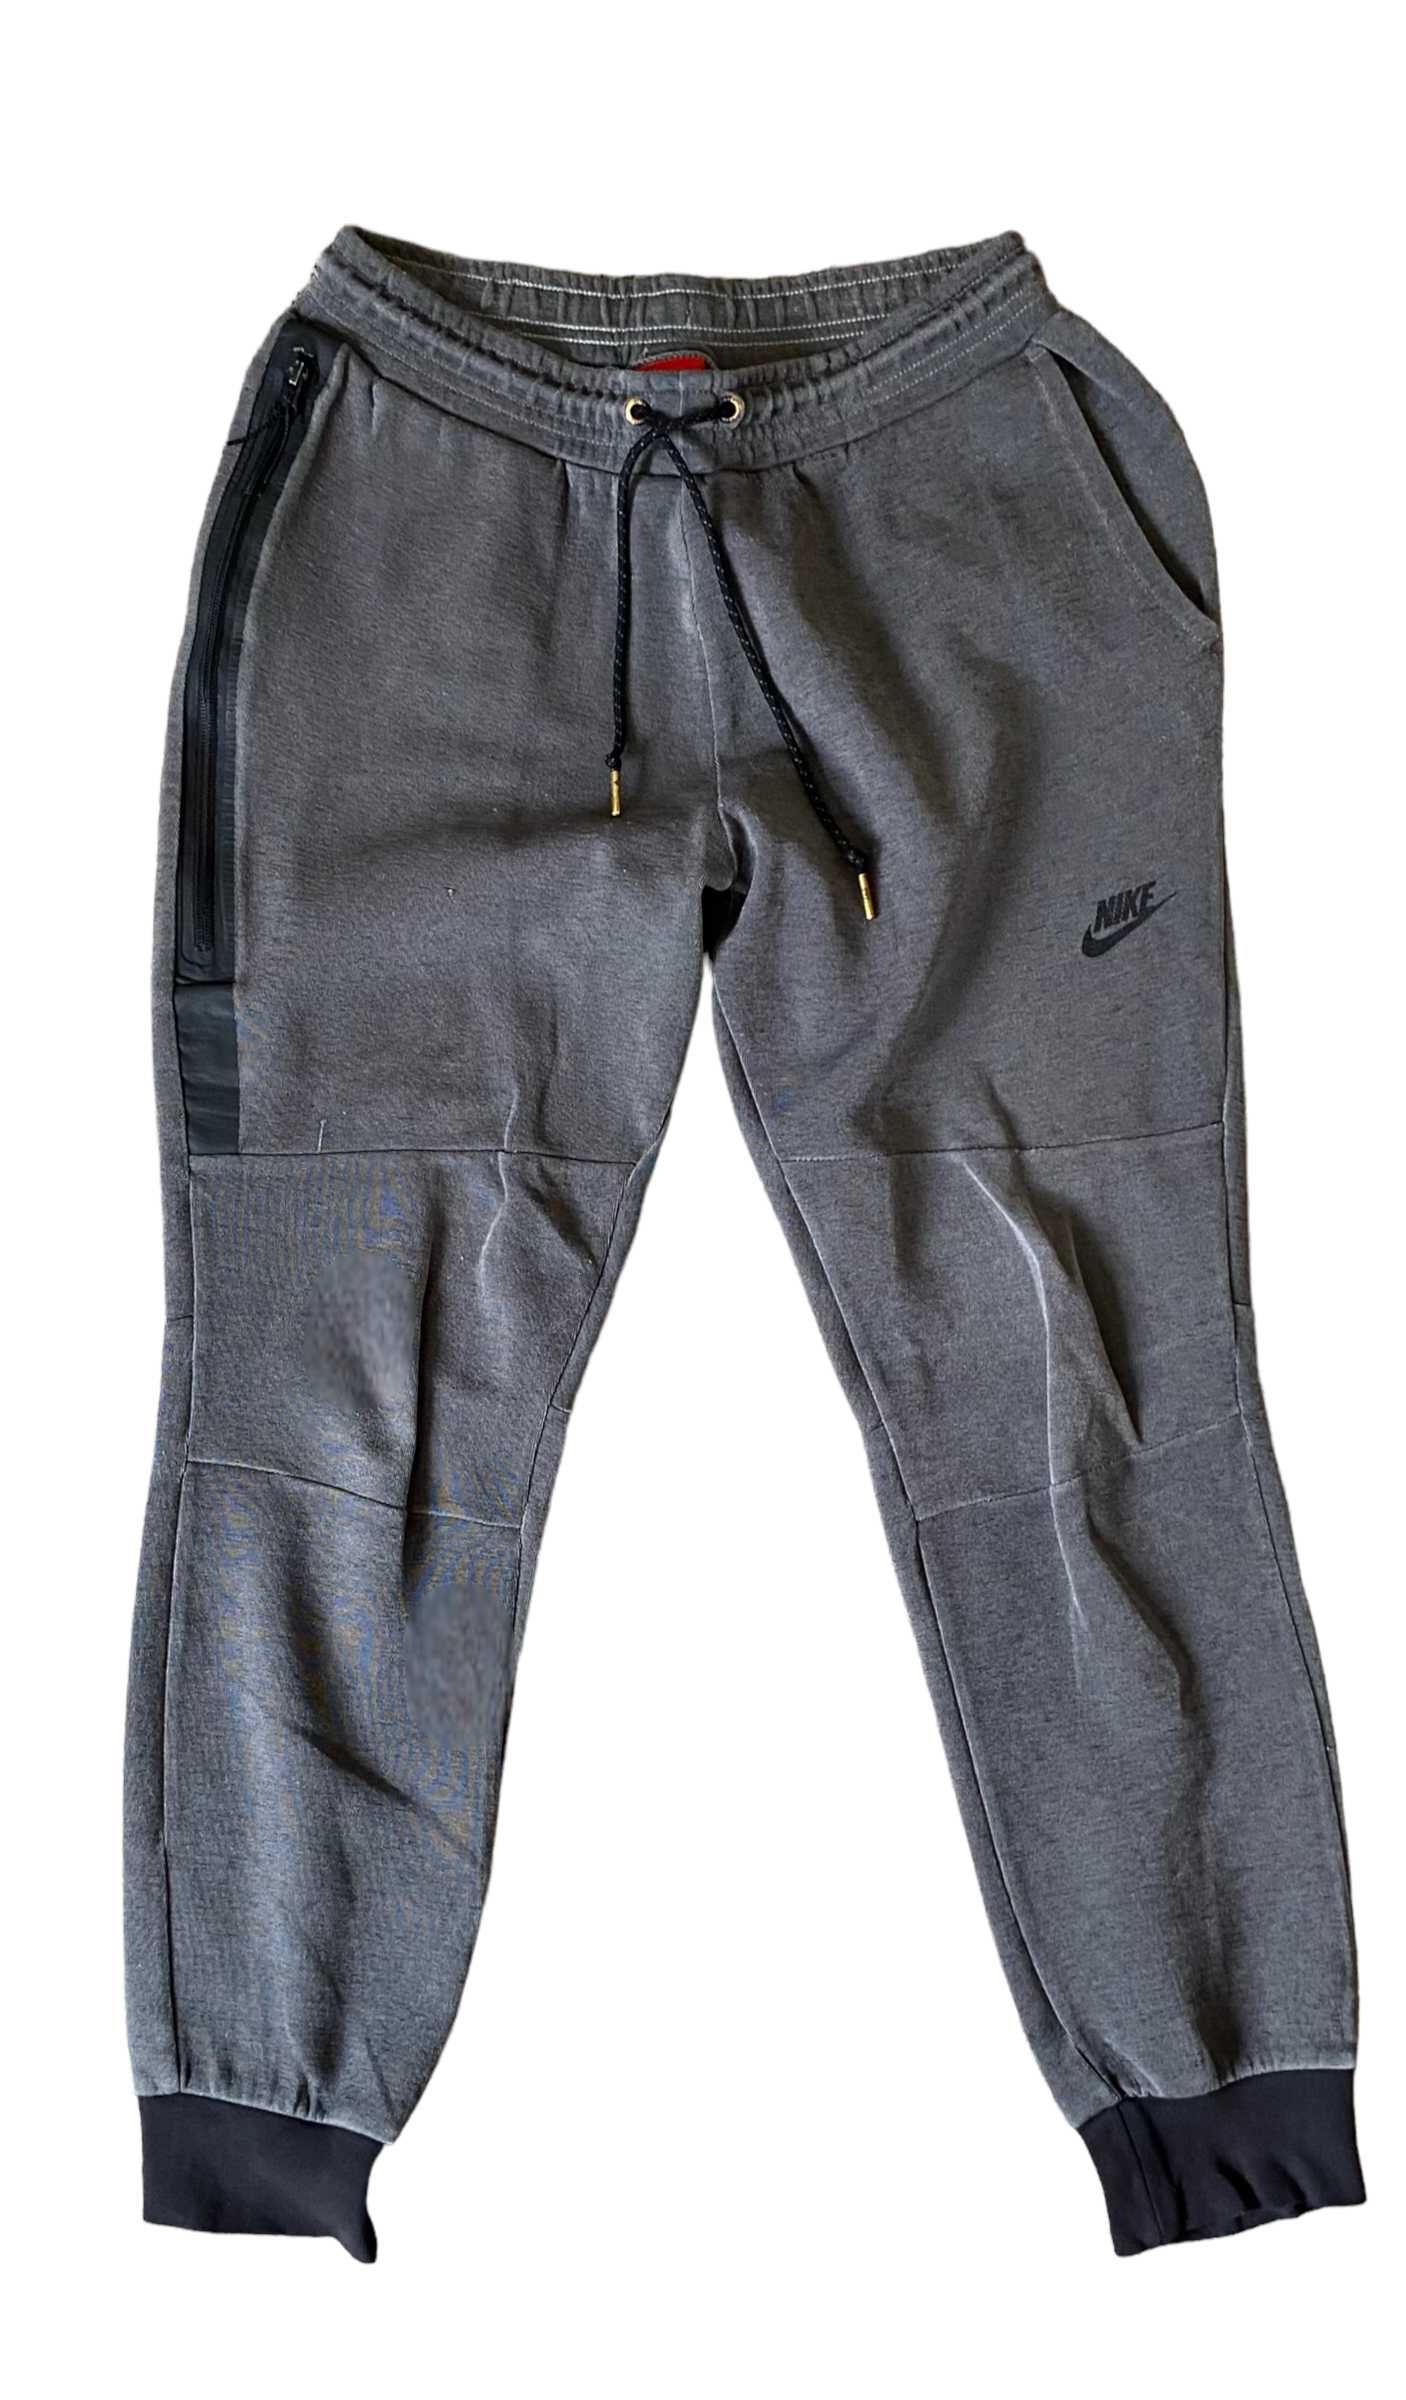 Nike tech fleece szare spodnie, rozmiar M, stan dobry